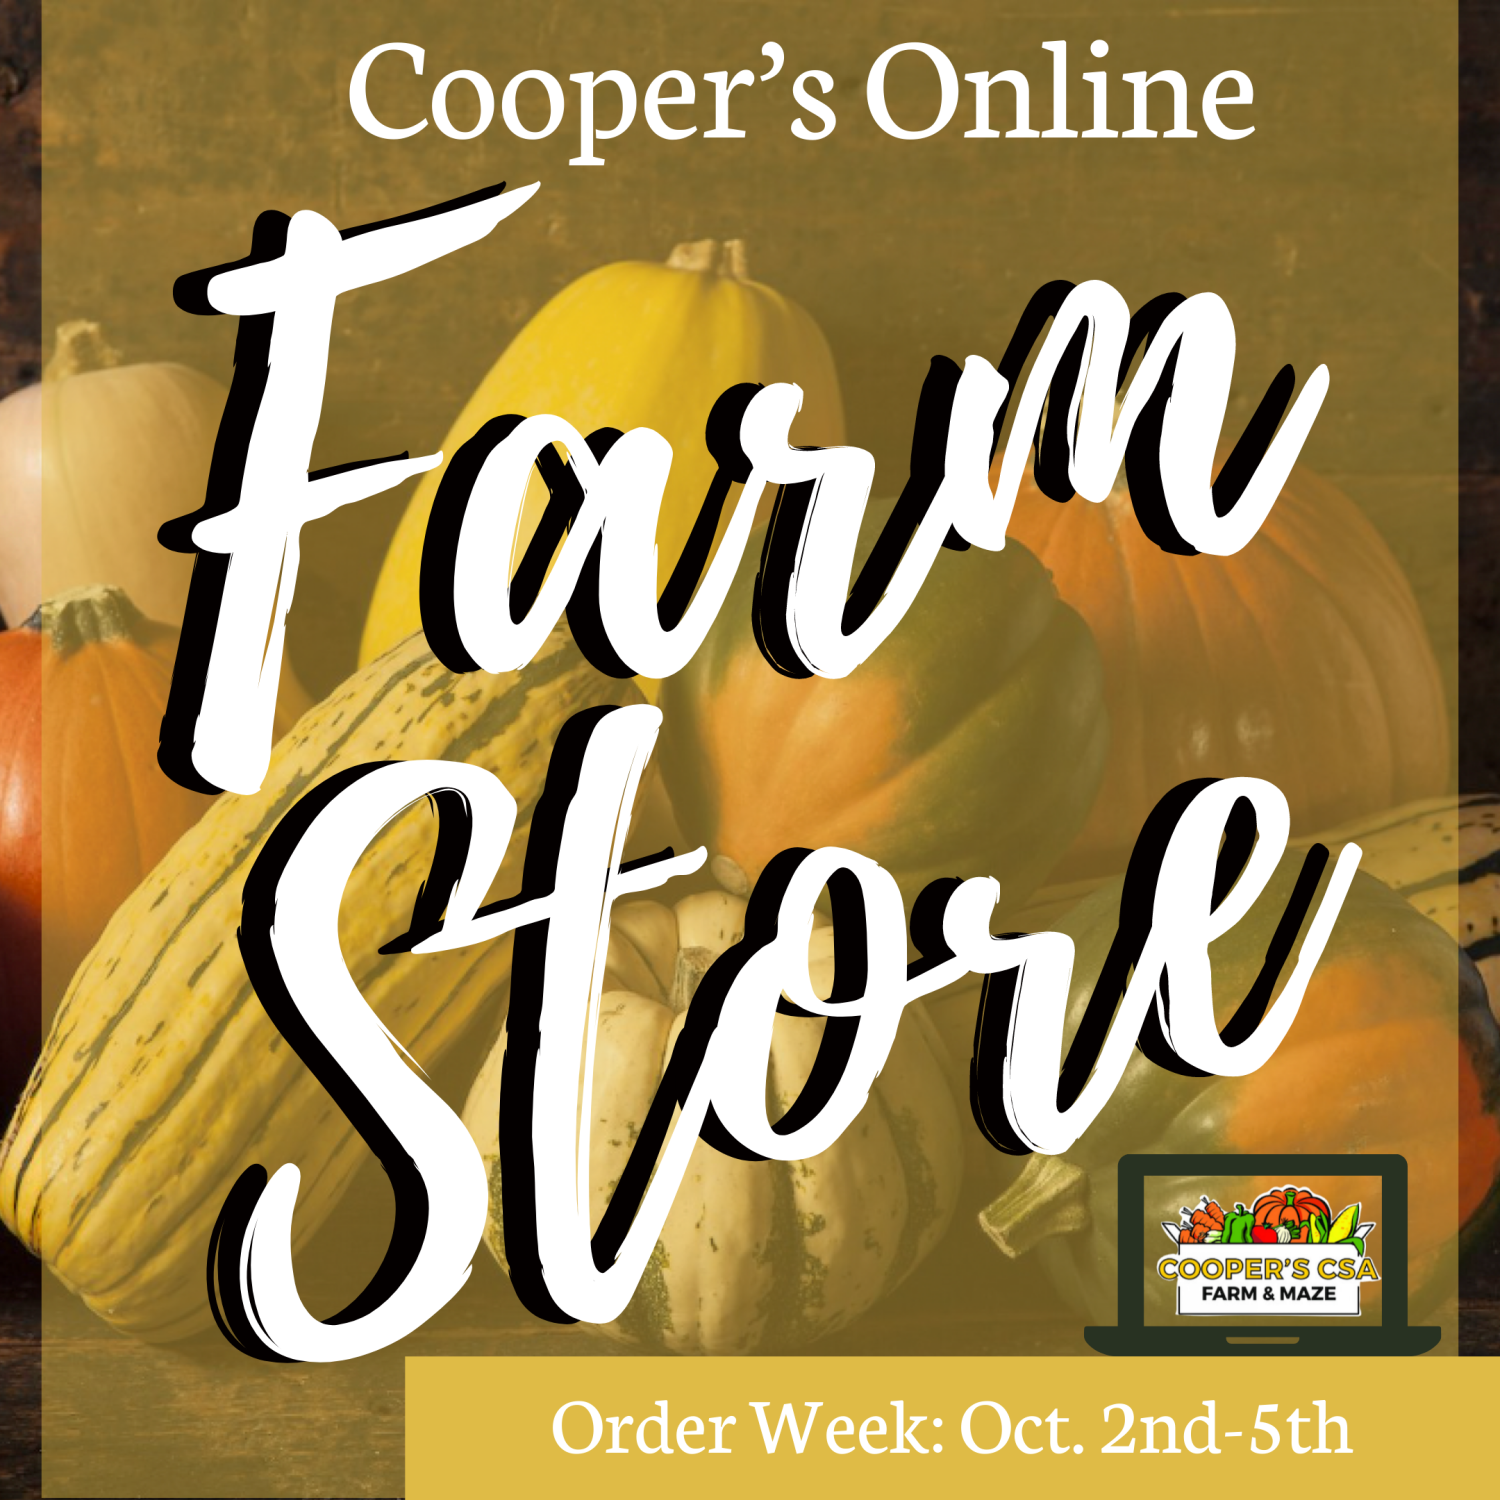 Previous Happening: Coopers CSA Online FarmStore- Order week 18